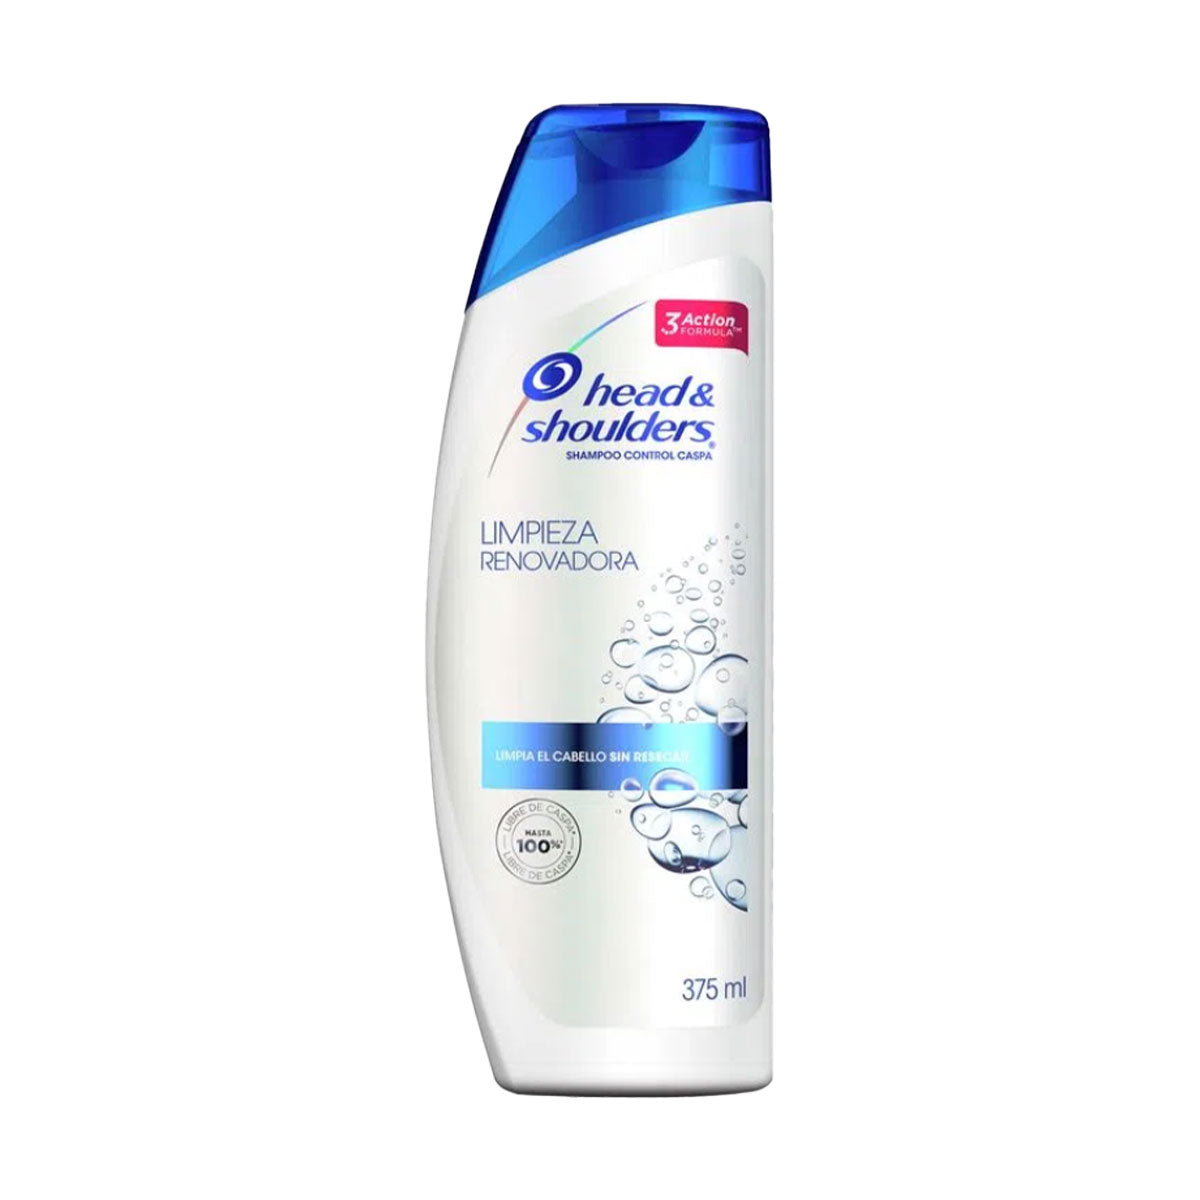 Shampoo Limpieza Renovadora Head & Shoulders 375 ml